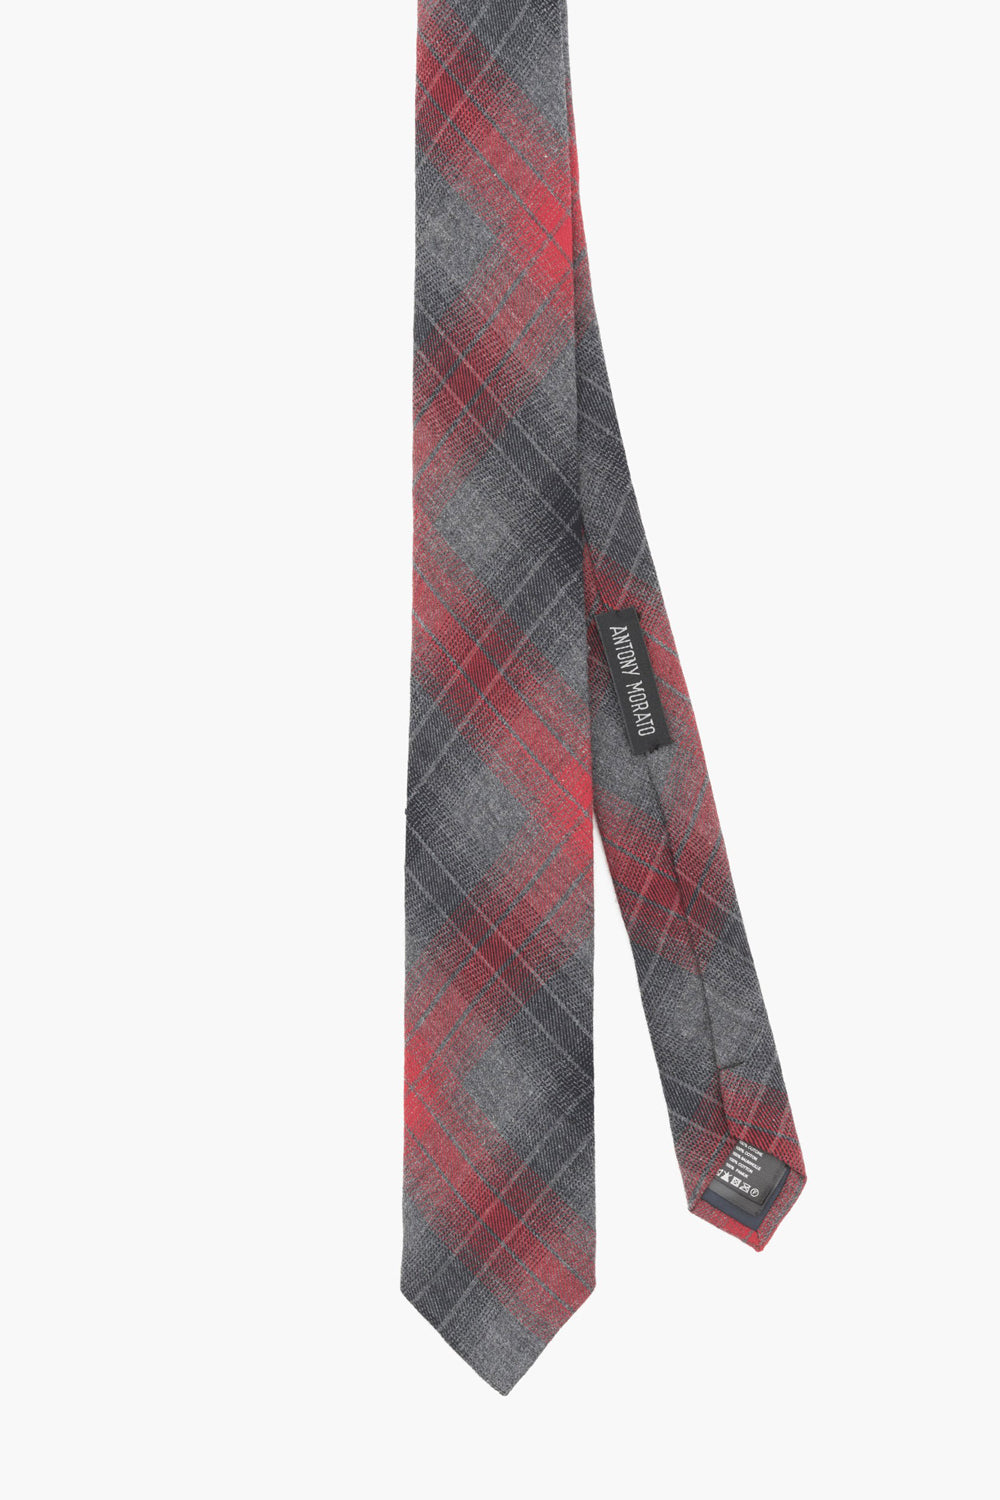 Antony Morato Krawatte im Karomuster in schwarz rot grau